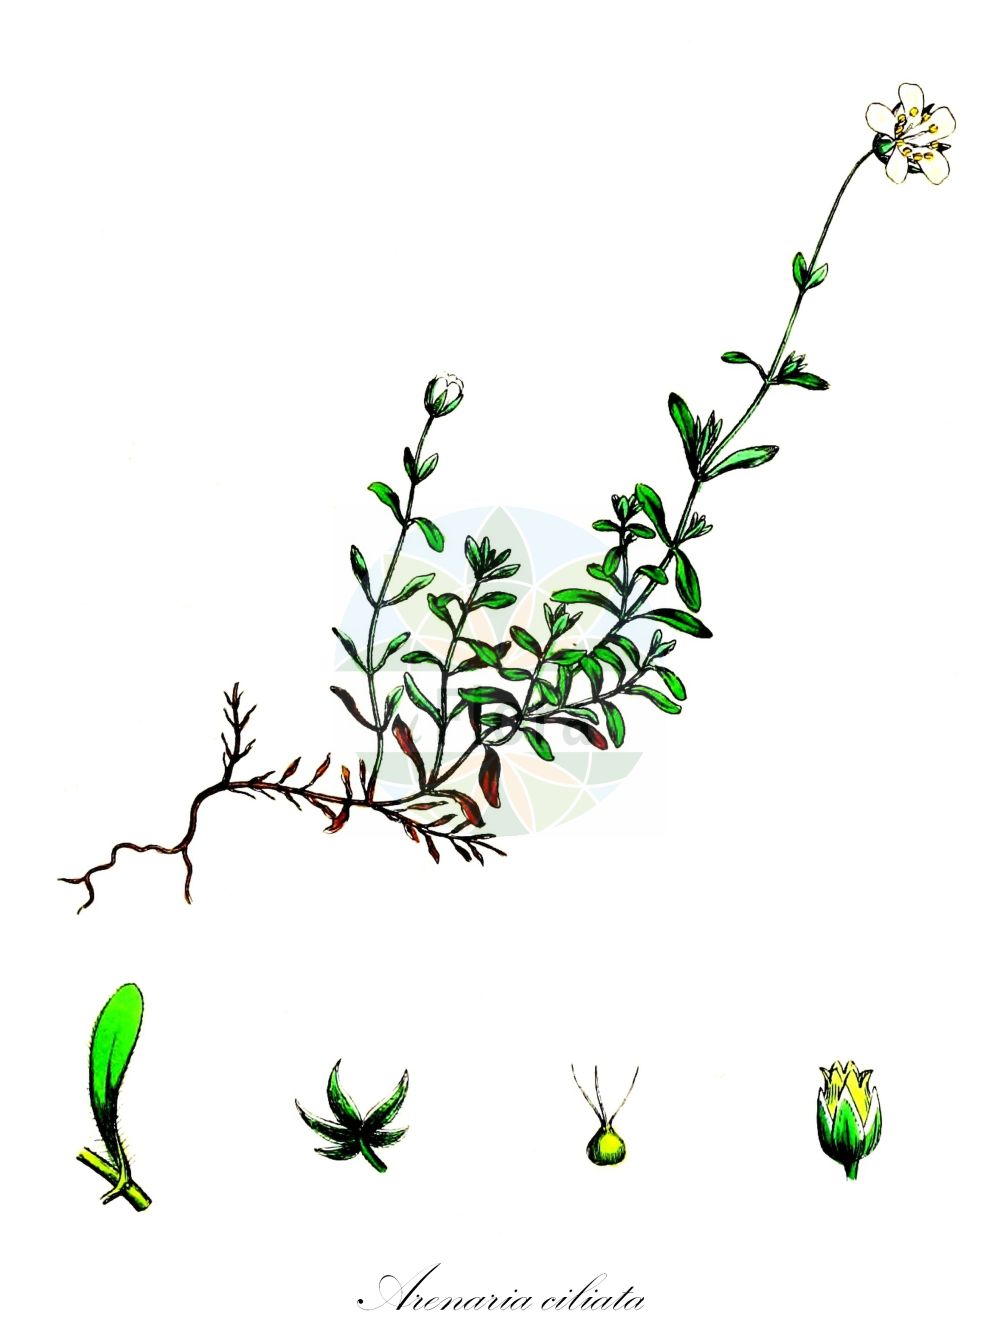 Historische Abbildung von Arenaria ciliata (Wimper-Sandkraut - Fringed Sandwort). Das Bild zeigt Blatt, Bluete, Frucht und Same. ---- Historical Drawing of Arenaria ciliata (Wimper-Sandkraut - Fringed Sandwort). The image is showing leaf, flower, fruit and seed.(Arenaria ciliata,Wimper-Sandkraut,Fringed Sandwort,Arenaria ciliata,Arenaria multicaulis,Wimper-Sandkraut,Vielstengeliges Wimper-Sandkraut,Fringed Sandwort,Ciliate-leaved Sandwort,Tundra Sandwort,Hairy Sandwort,Arenaria,Sandkraut,Sandwort,Caryophyllaceae,Nelkengewächse,Pink family,Blatt,Bluete,Frucht,Same,leaf,flower,fruit,seed,Sowerby (1790-1813))